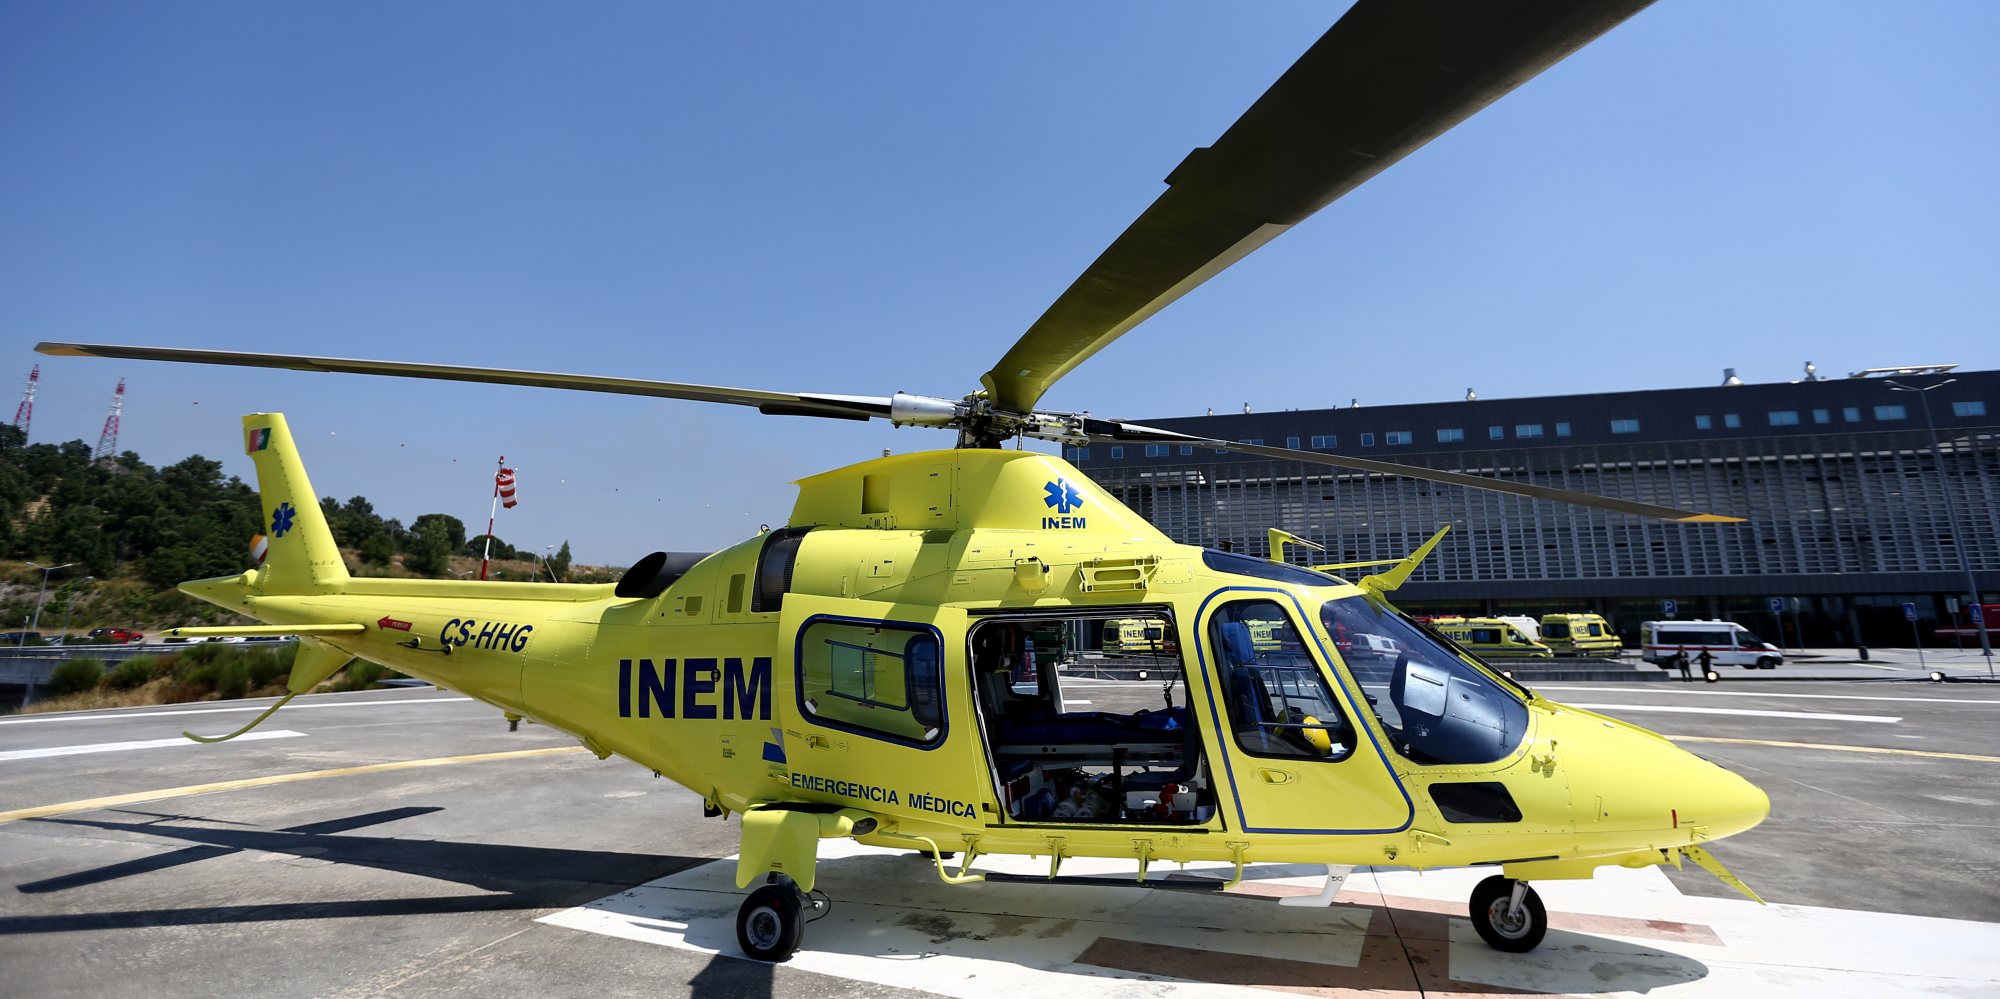 Helicóptero do INEM no Hospital de Braga, um dos hospitais que admite utilizar o heliporto sem autorização da ANAC